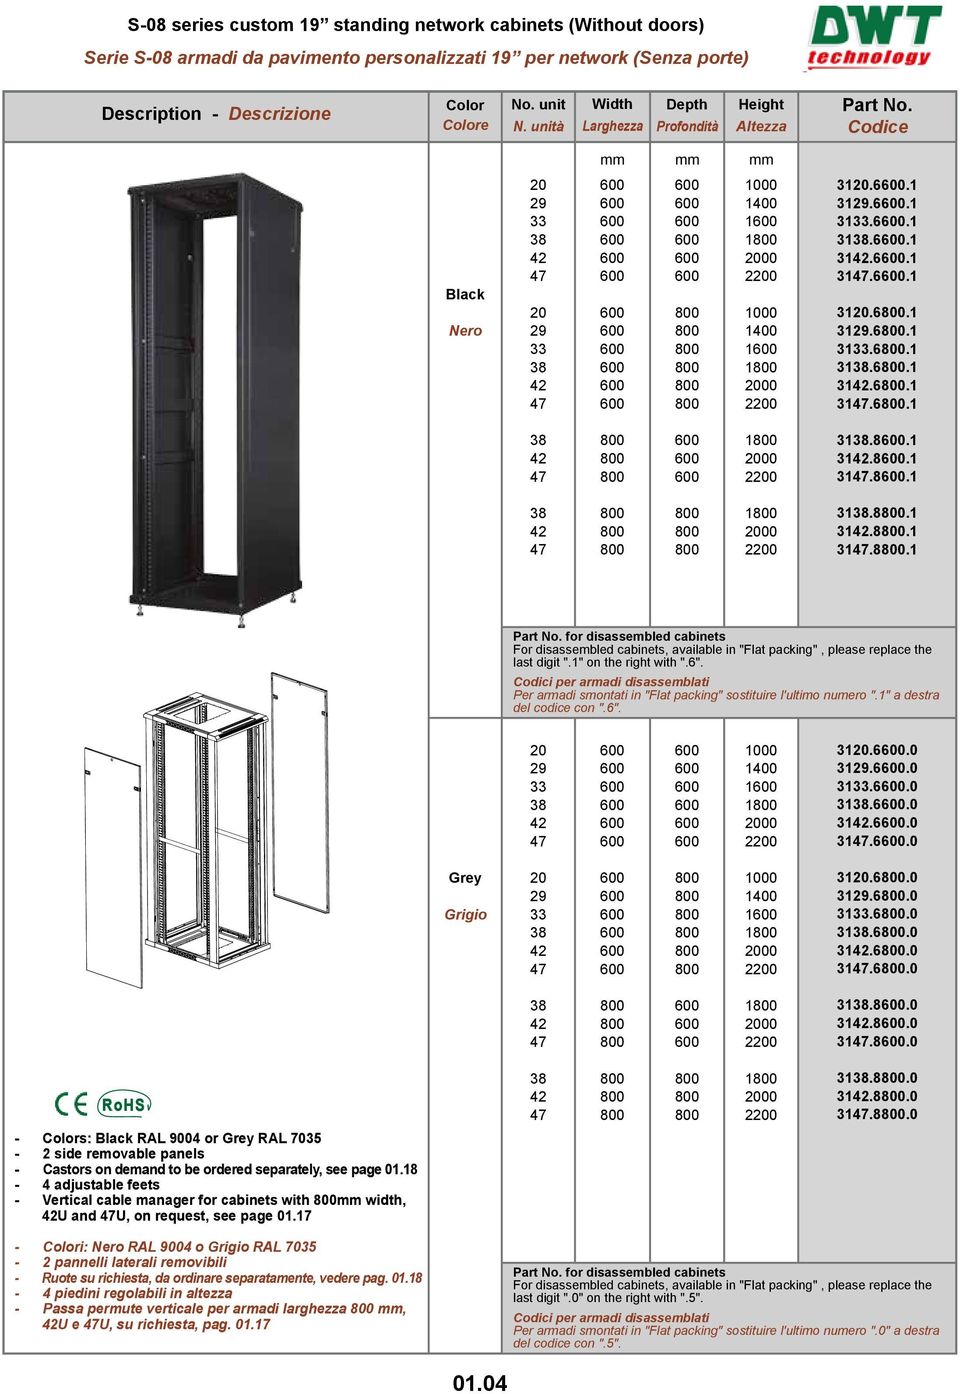 Cabinets And Components For Local Area Network Lan And Data Center Armadi E Componenti Per Reti Locali Lan E Data Center Pdf Download Gratuito